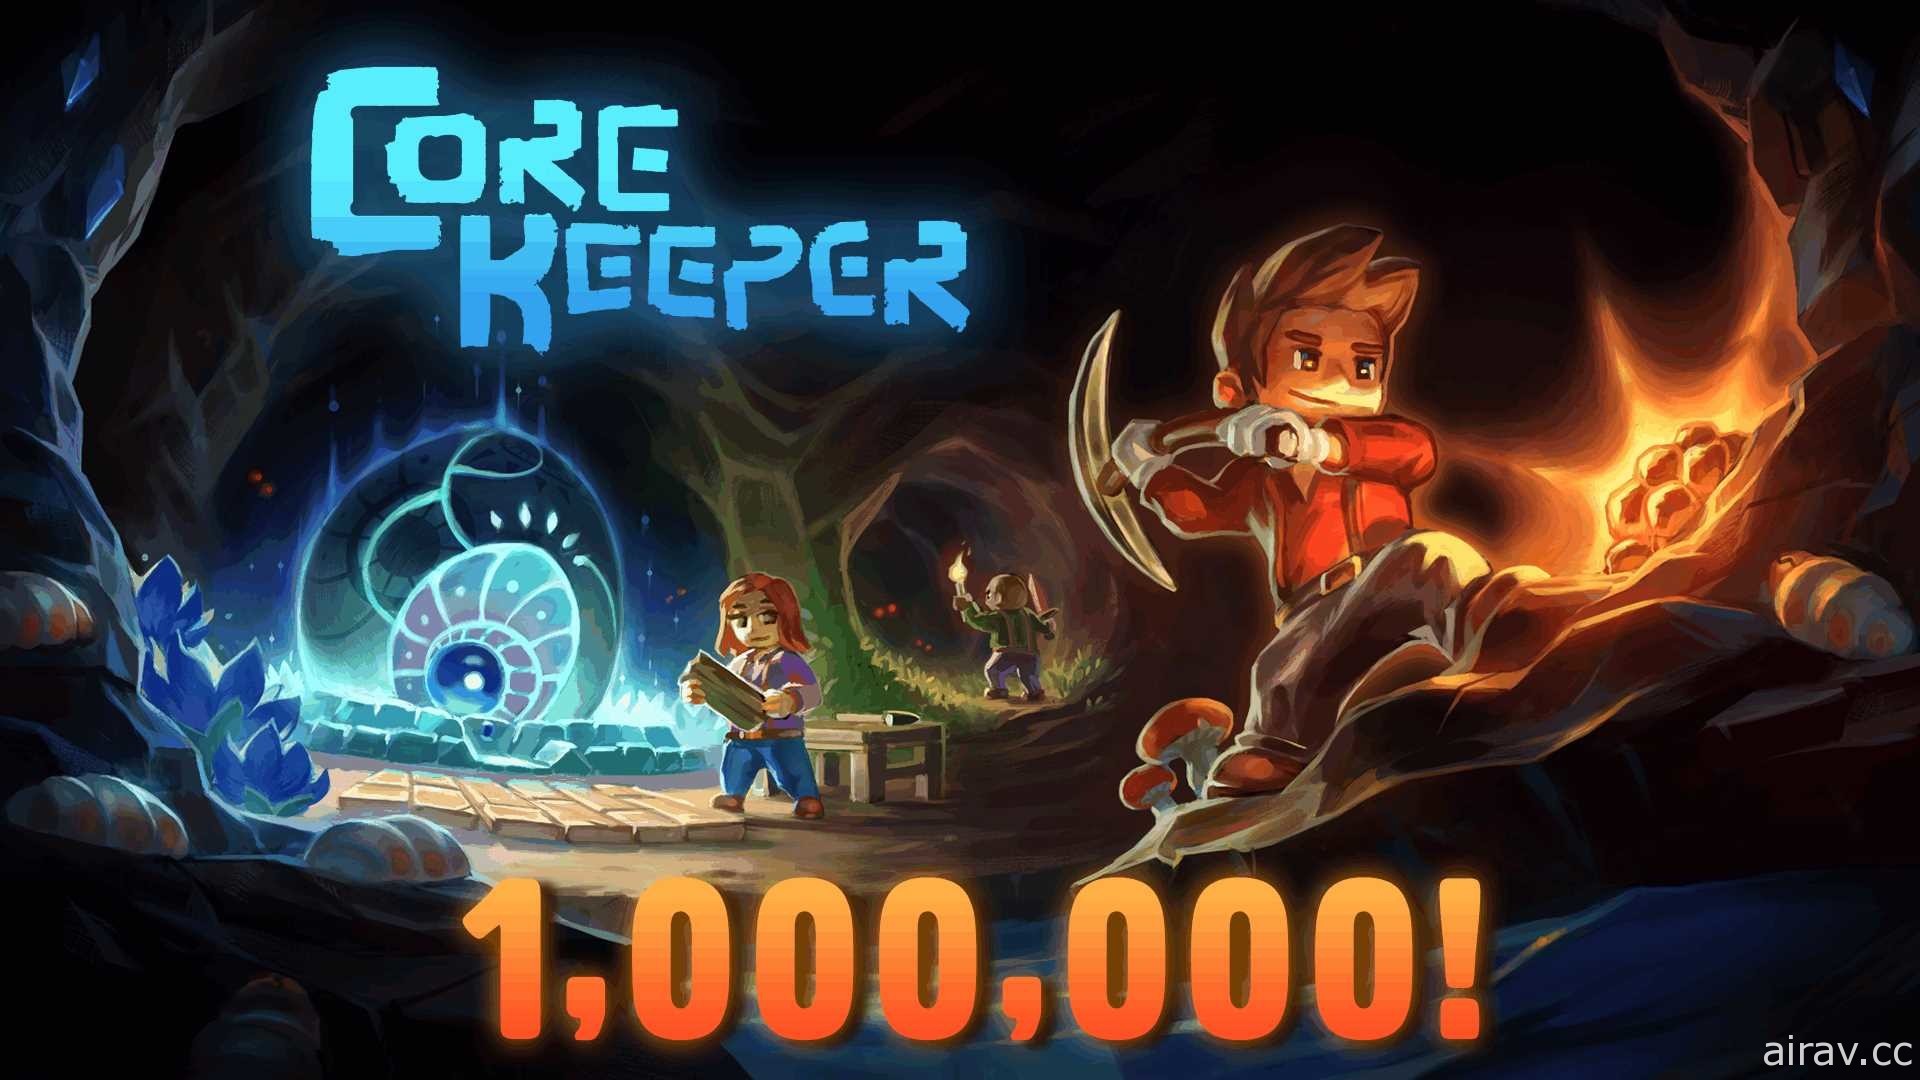 正在搶先體驗中的採礦沙盒冒險遊戲《Core Keeper》銷量突破百萬套